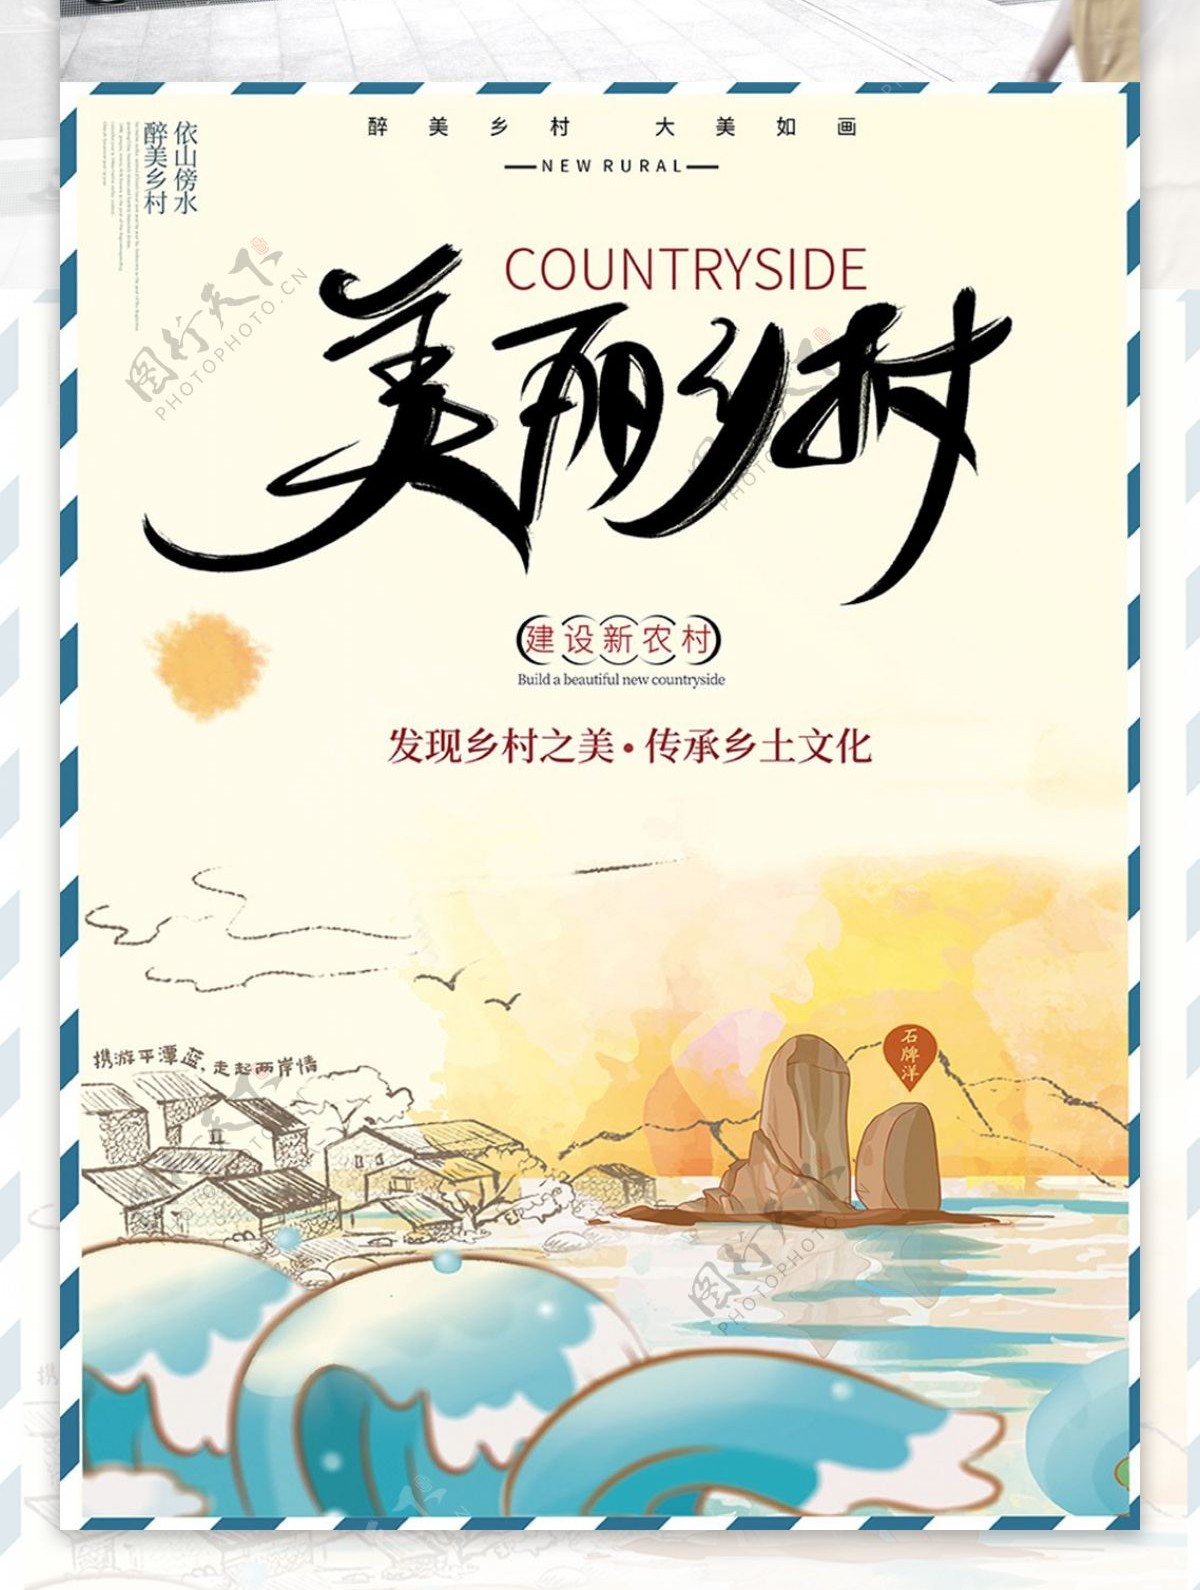 黄色夕阳湖泊插画诗意清新乡村文化宣传海报